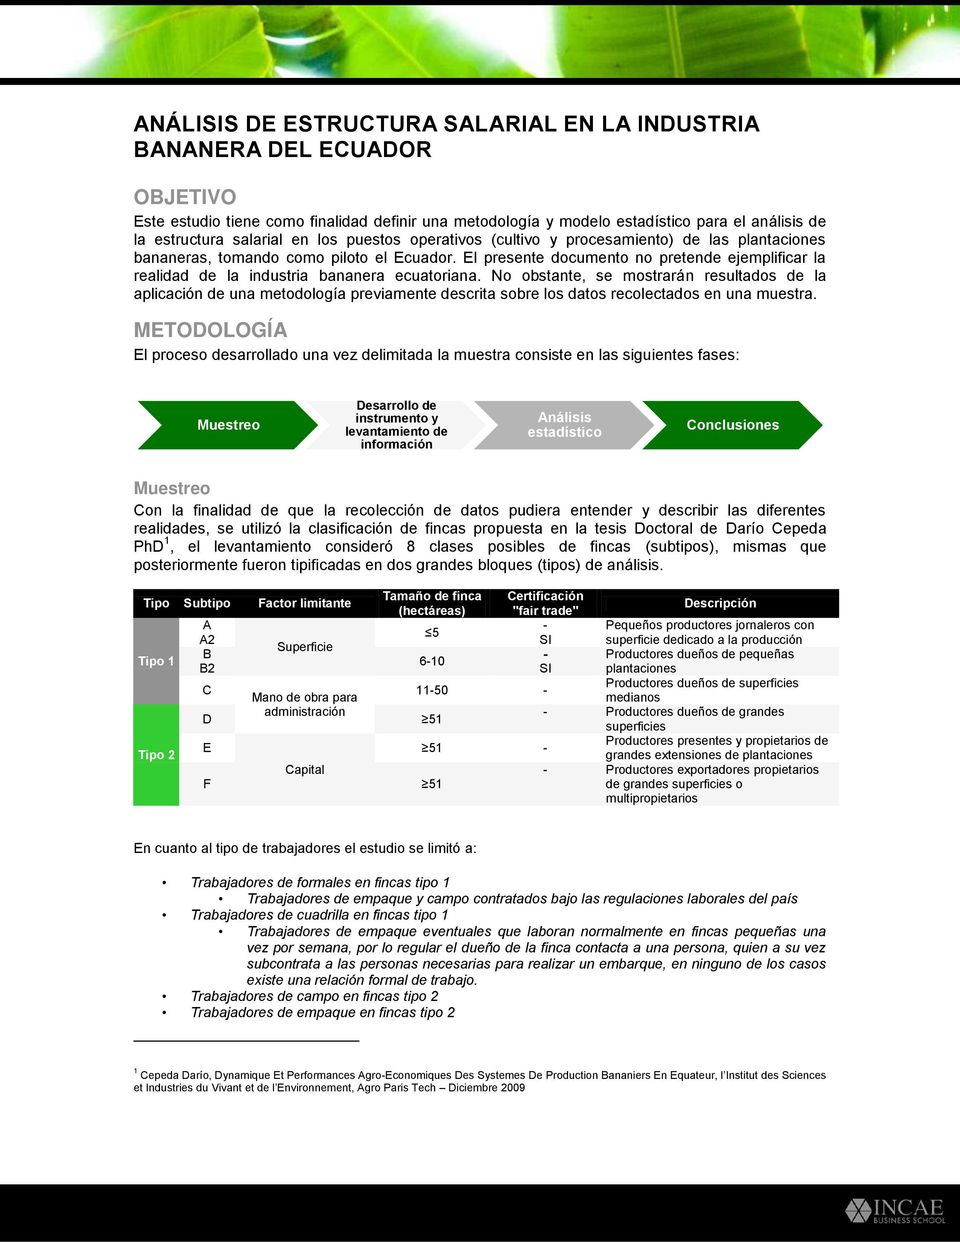 El presente documento no pretende ejemplificar la realidad de la industria bananera ecuatoriana.